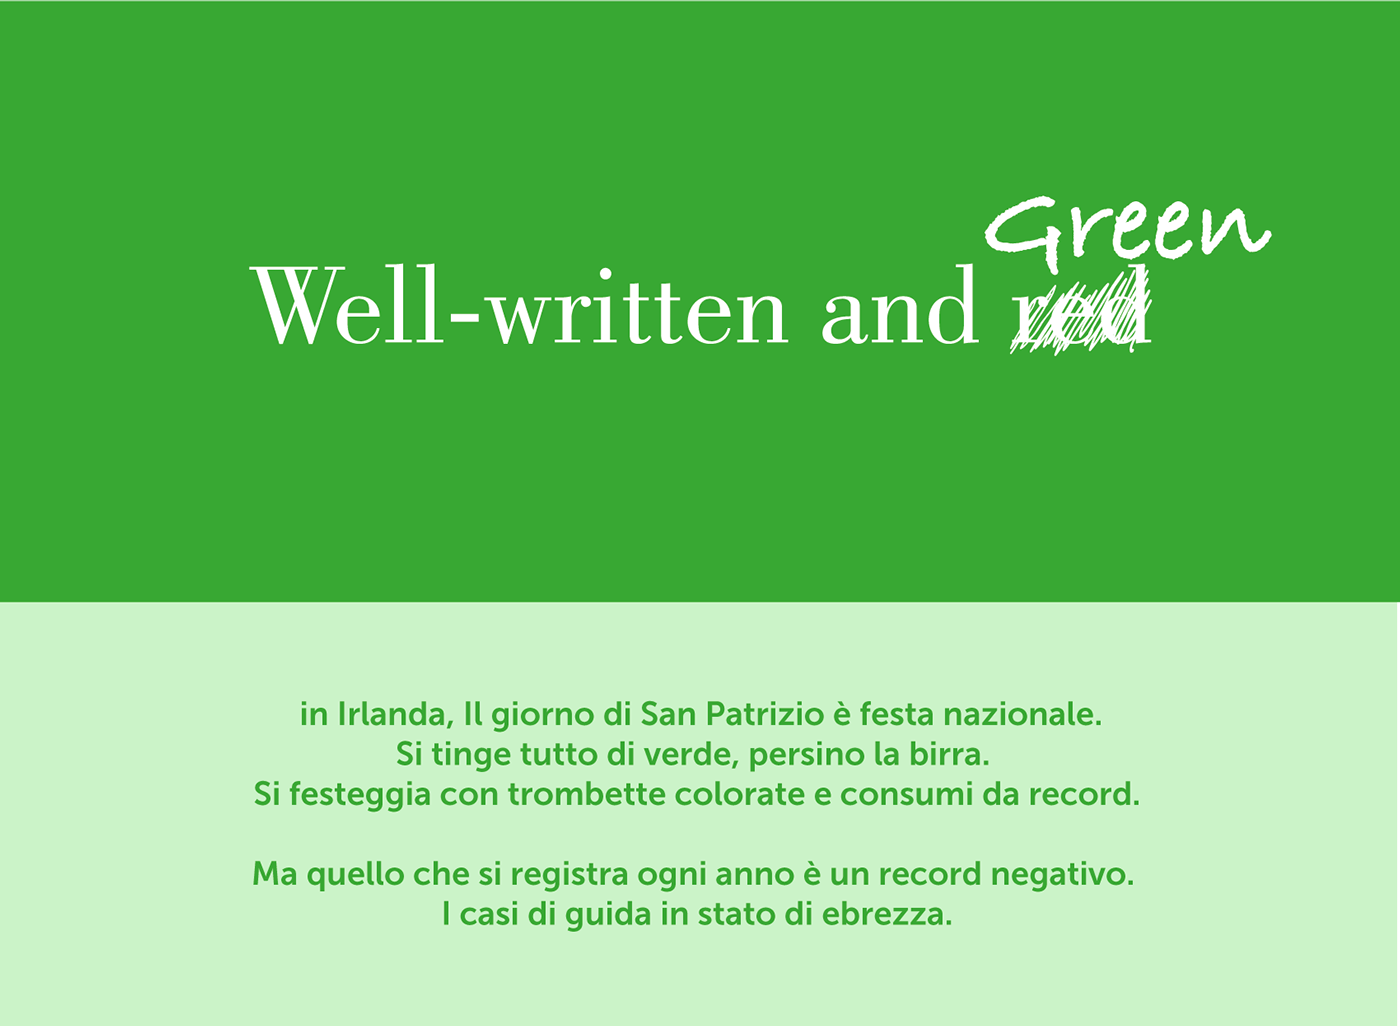 st.patrick's day san patrizio economist copy ad Copy announce green Verde alcol Fun drunk